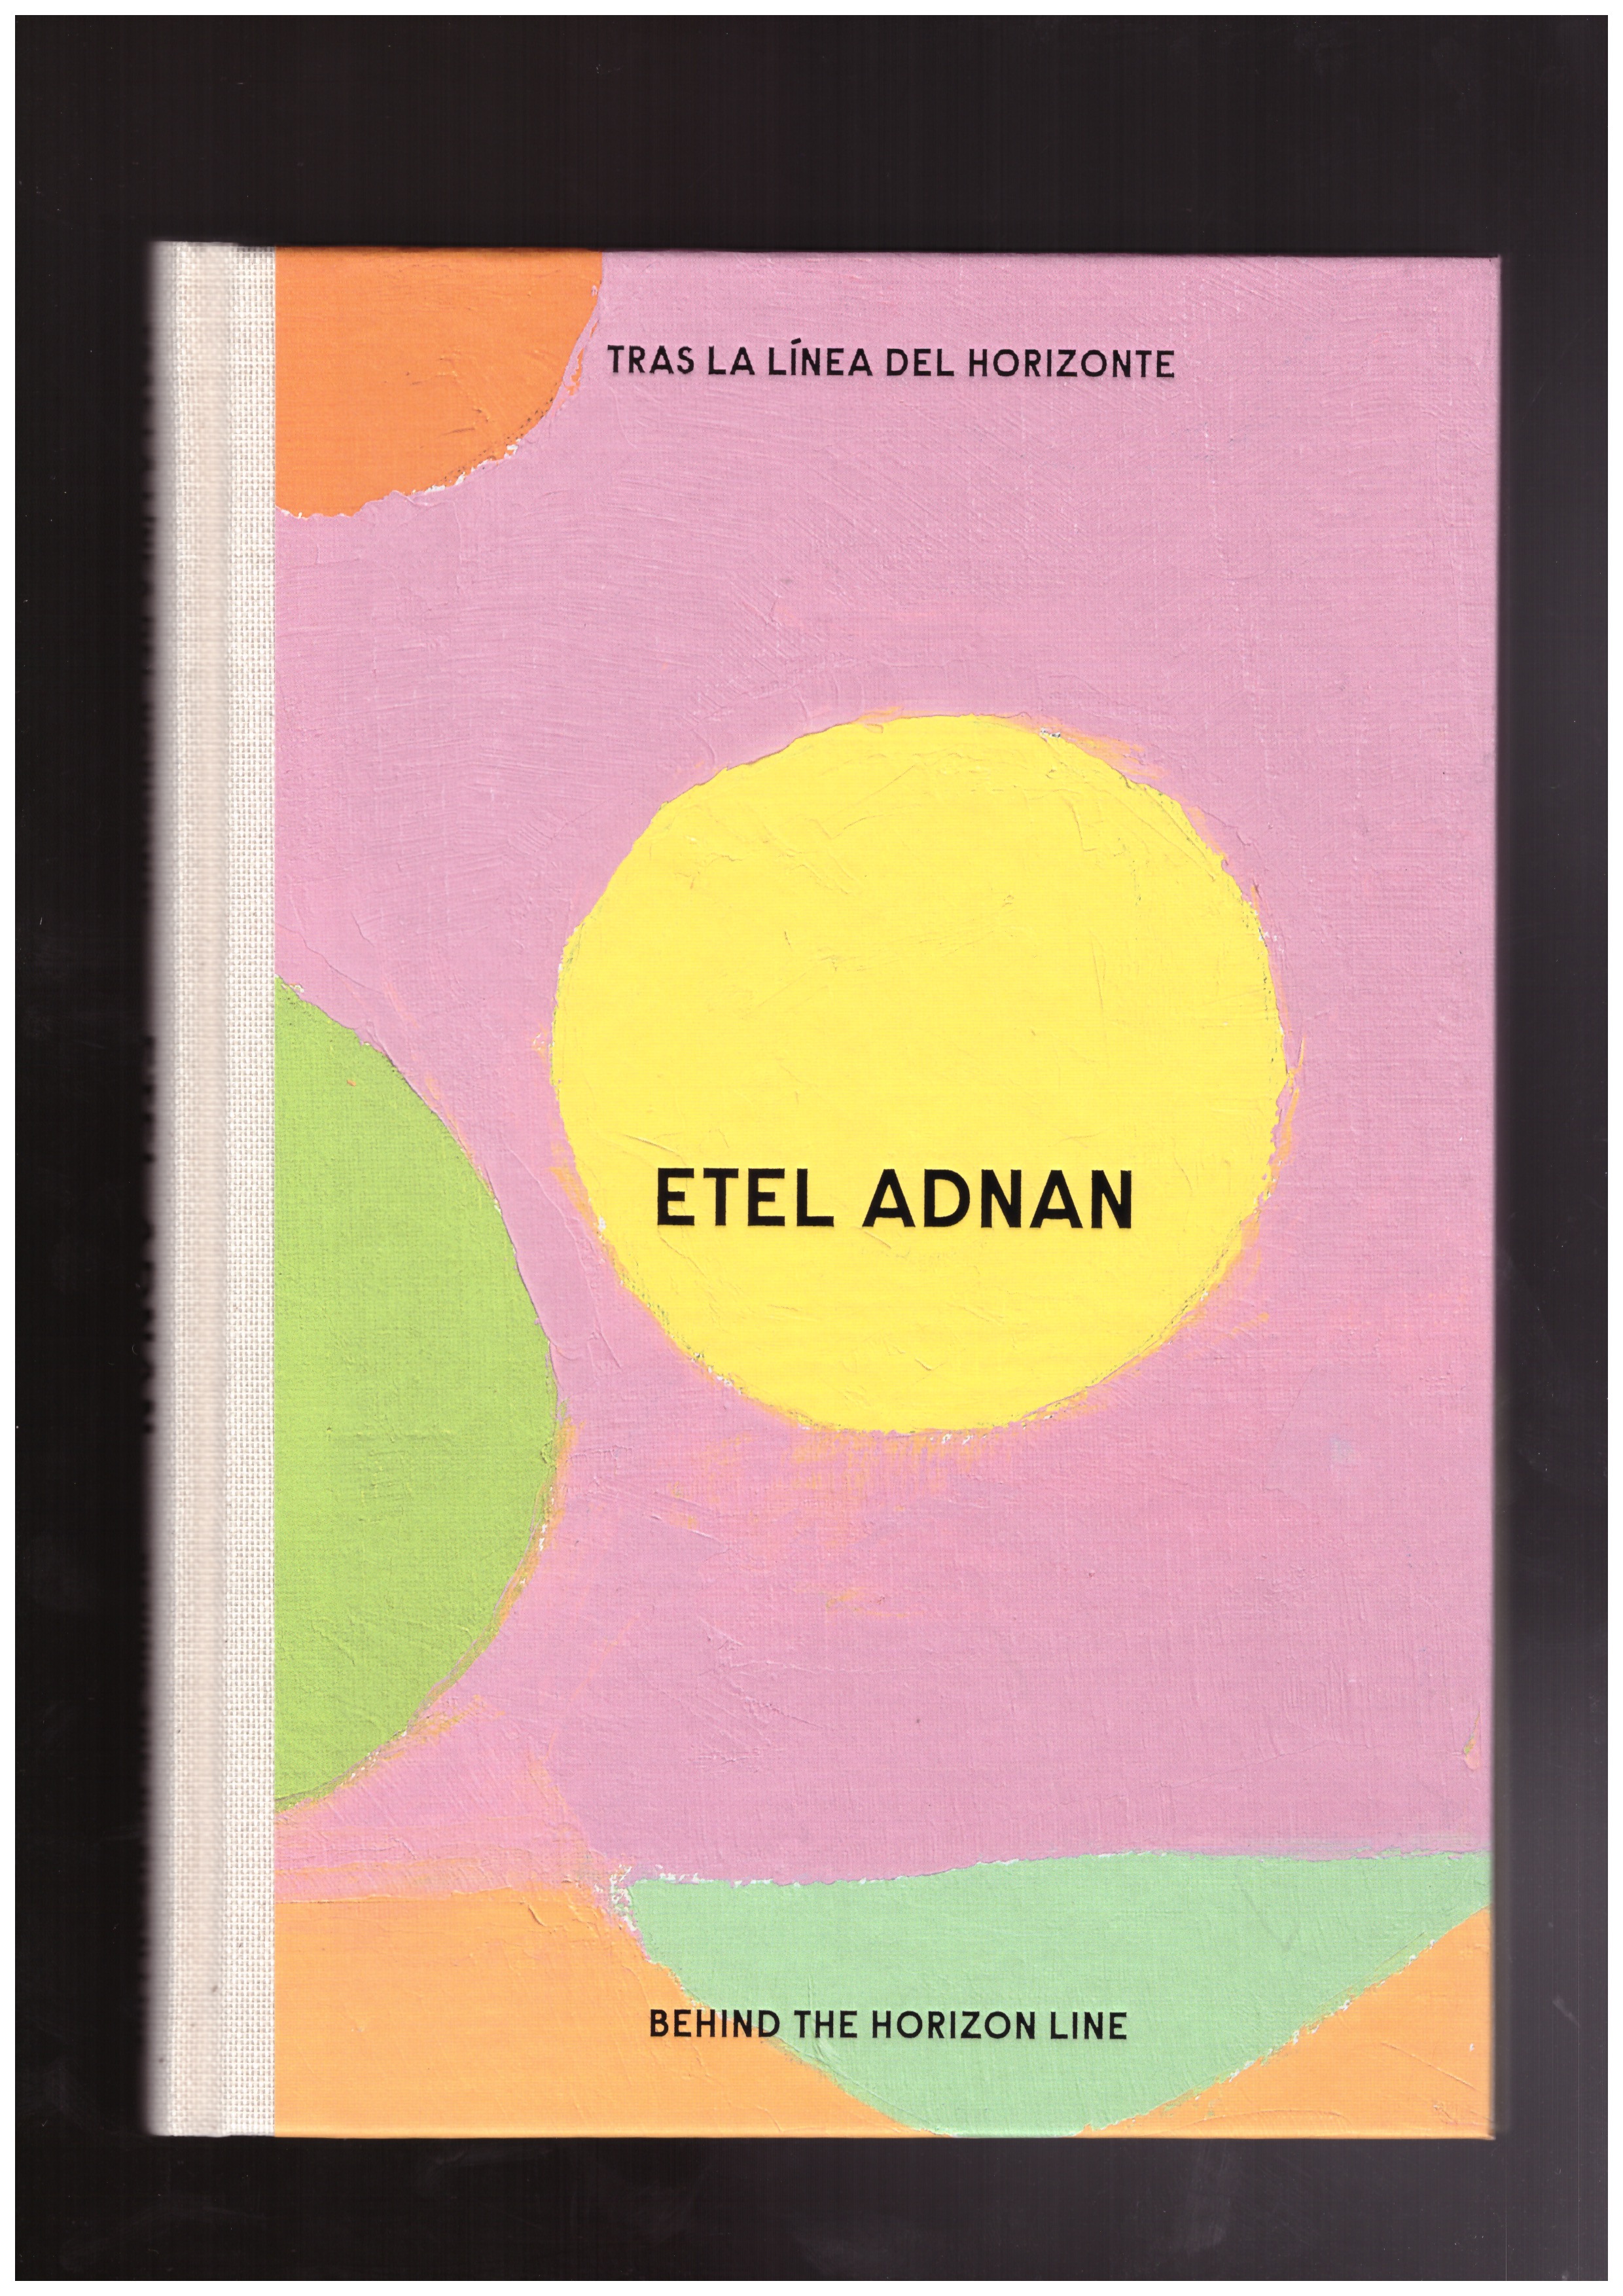 ADNAN, Etel; FOMINAYA, Álvaro Rodríguez; The Otolith Group - Etel Adnan - Behind the Horizon Line